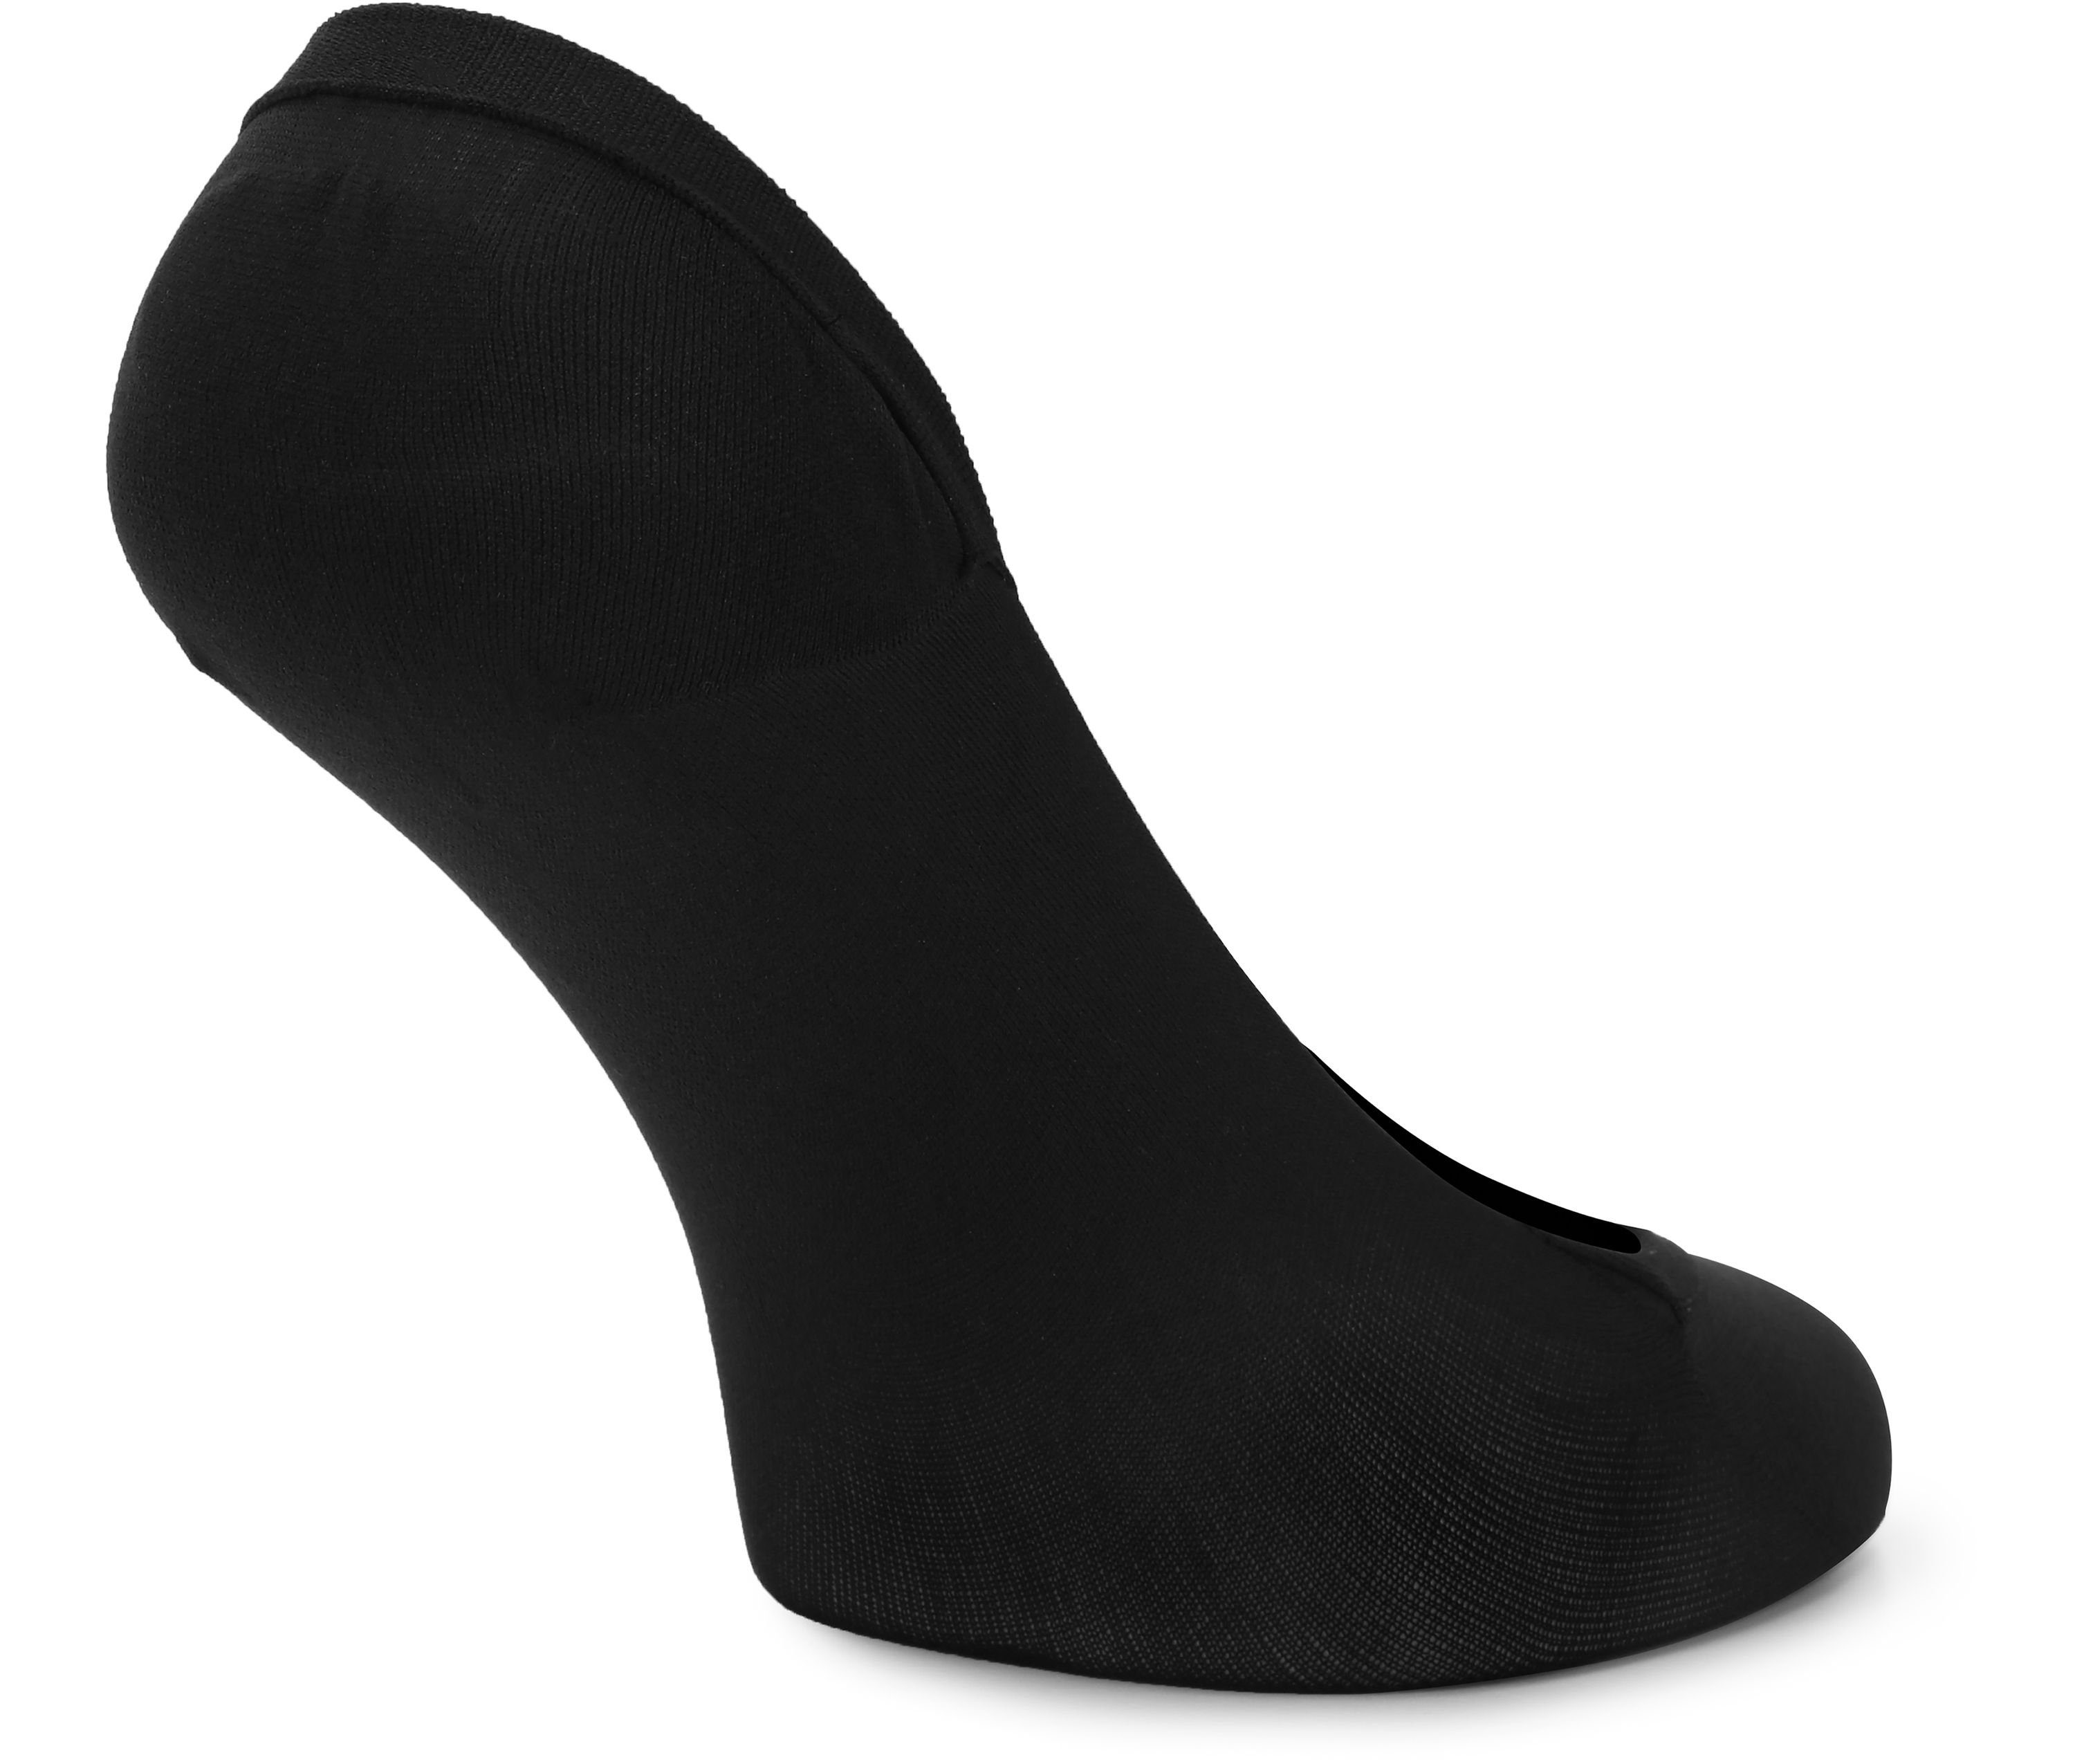 Atmungsaktive 2Pack Socken Schwarz/Beige Halbsocken - MSGI046 Style Merry Damen Füßlinge Sneaker Socken